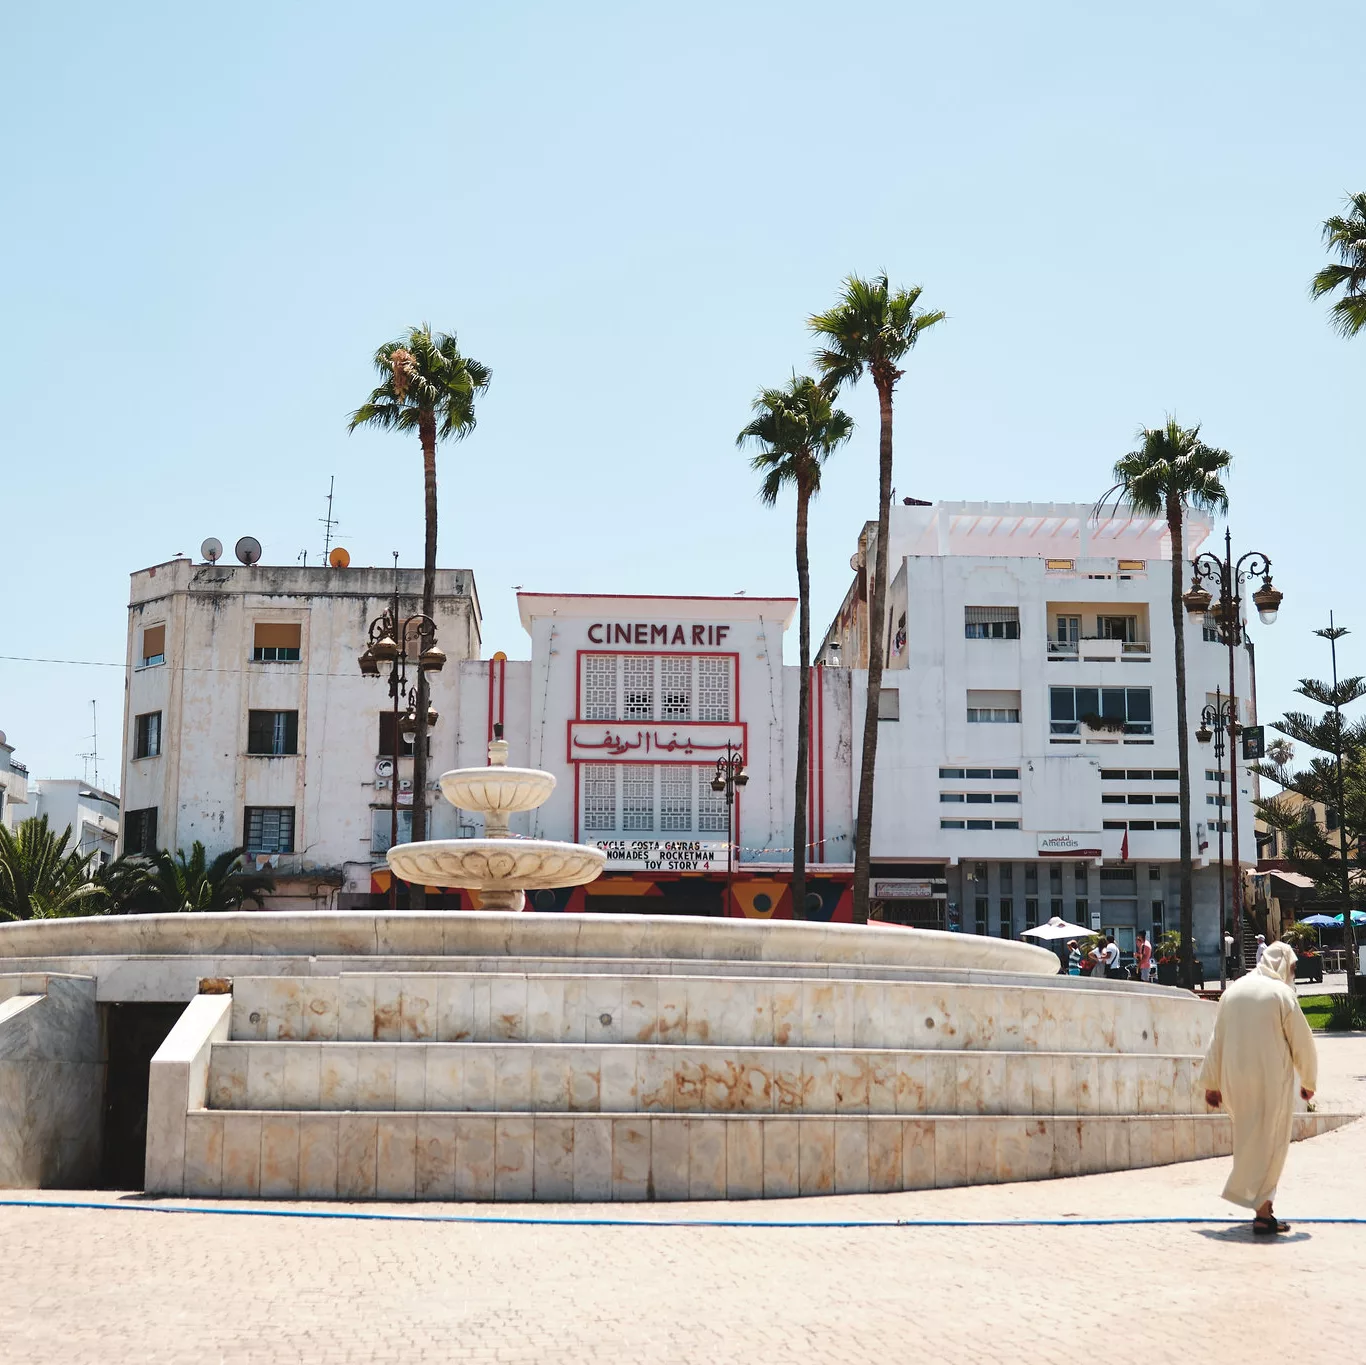 Cinema Rif in Tangier